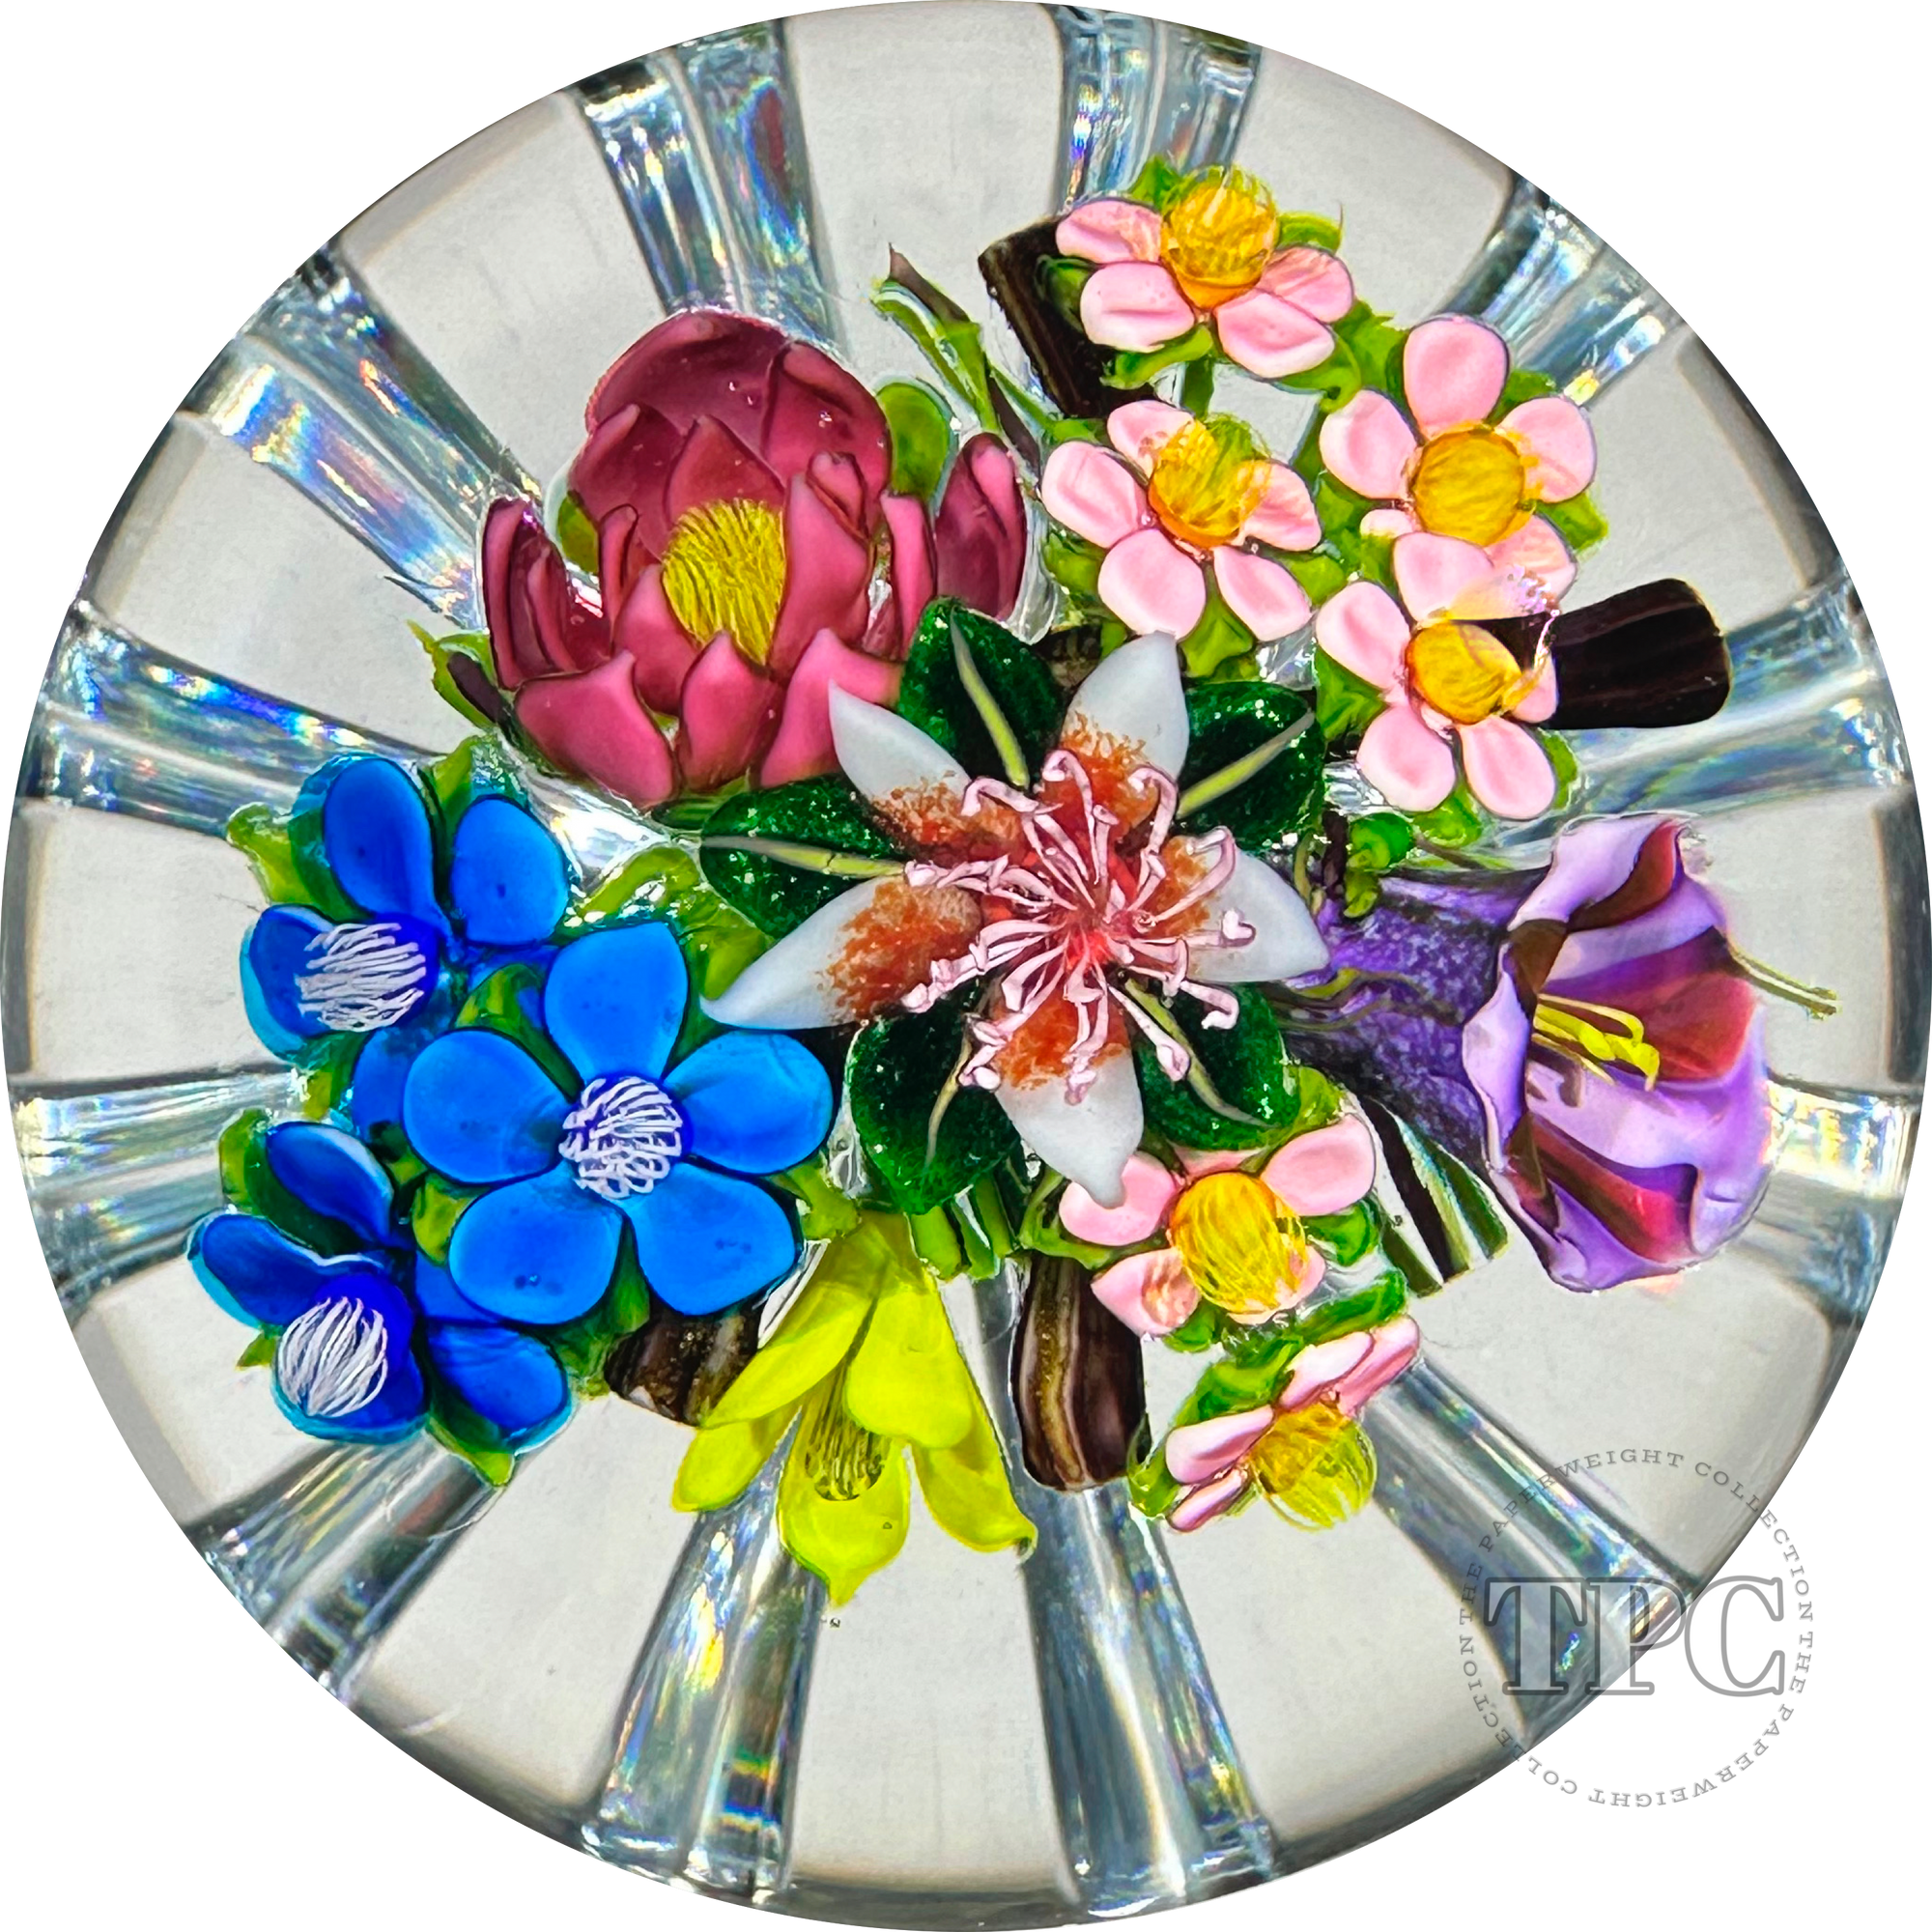 Ken Rosenfeld 2022 Glass Art Paperweight Flamework Flower Bouquet with Star-cut Base